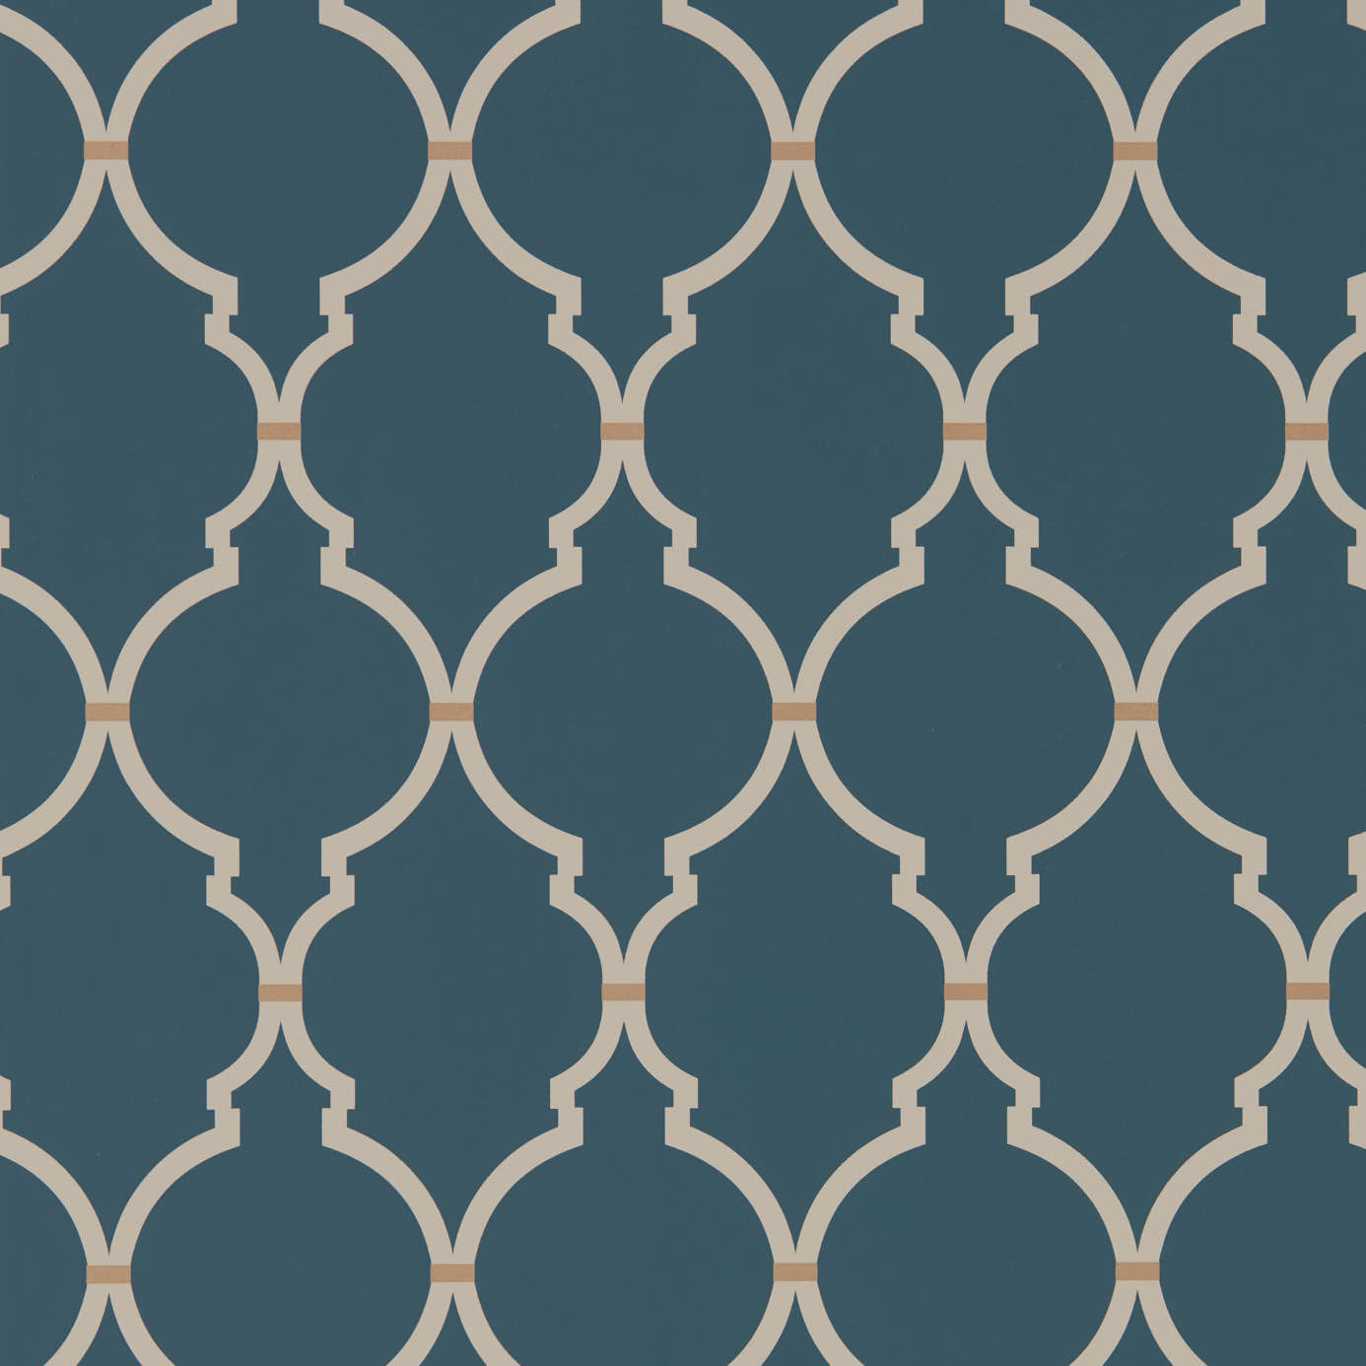 Empire Trellis Indigo/Linen Wallpaper by SAN